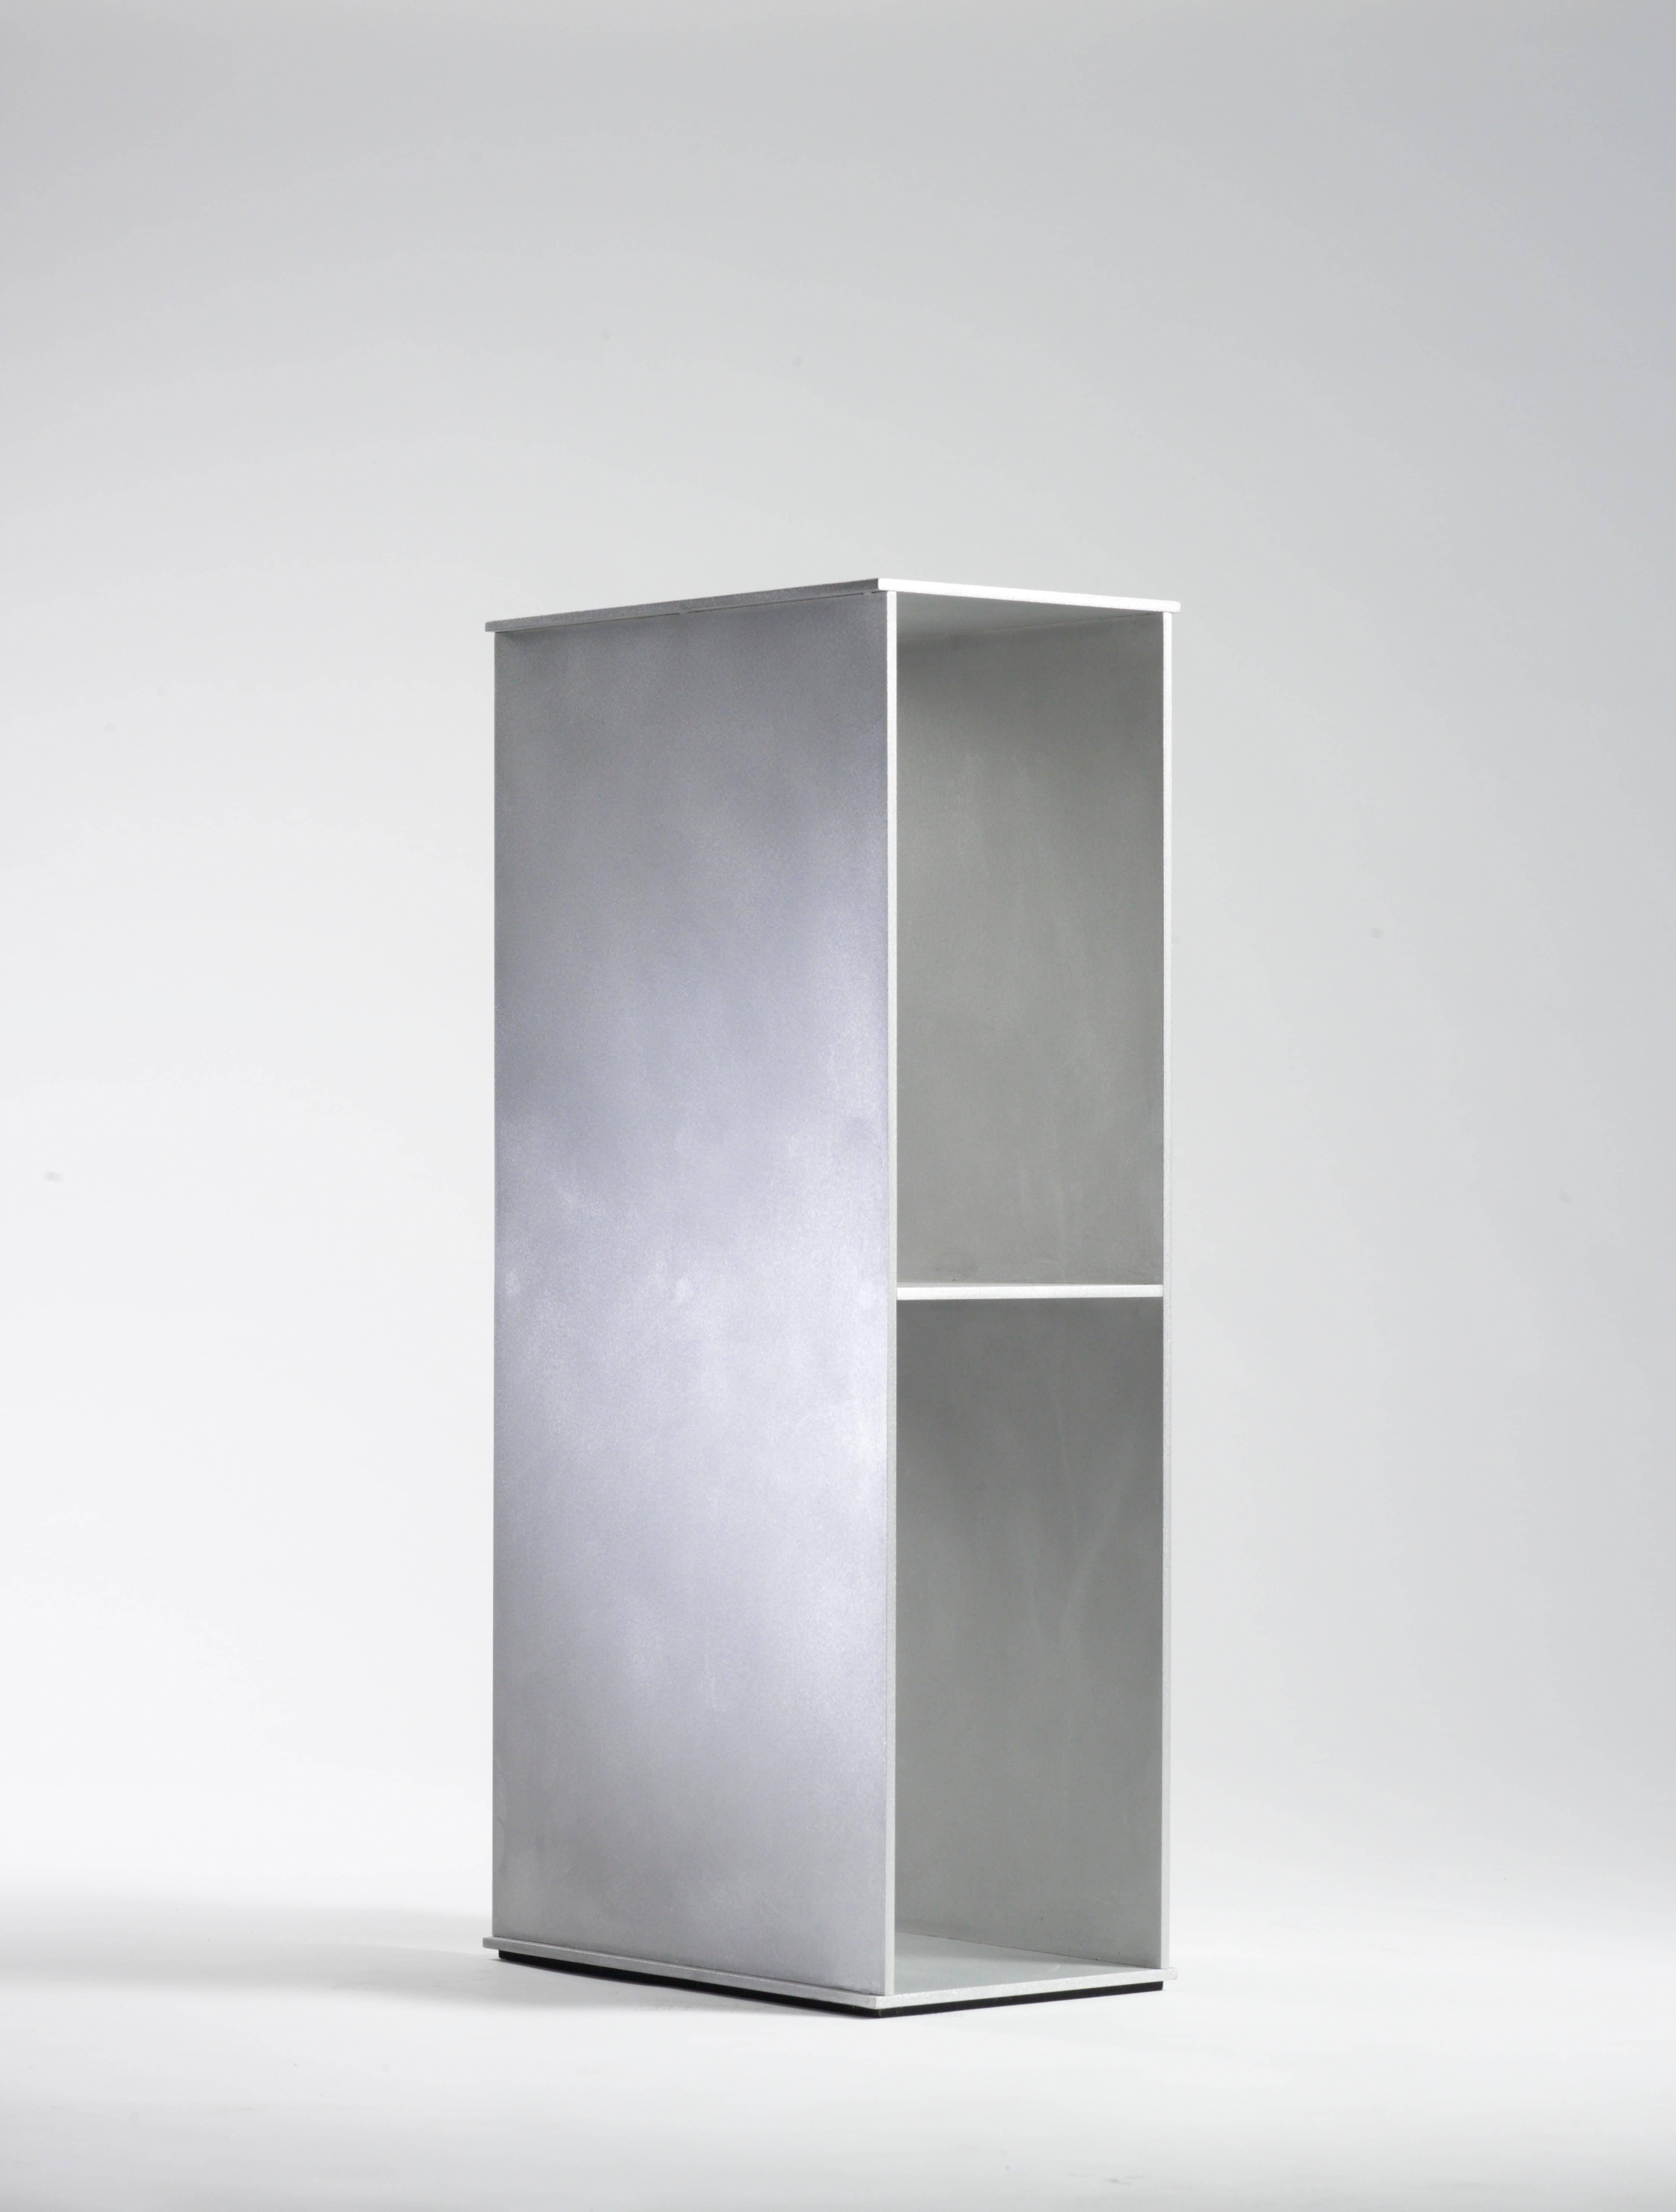 2G Bodenregal aus 0,25 Zoll dickem Aluminiumblech, Teil der Einzelausstellung nine variations in der Mondo Cane Gallery im Jahr 2011. Digital geschnittene Aluminiumplatten werden mit vertieften, glatt geschliffenen Schweißnähten miteinander